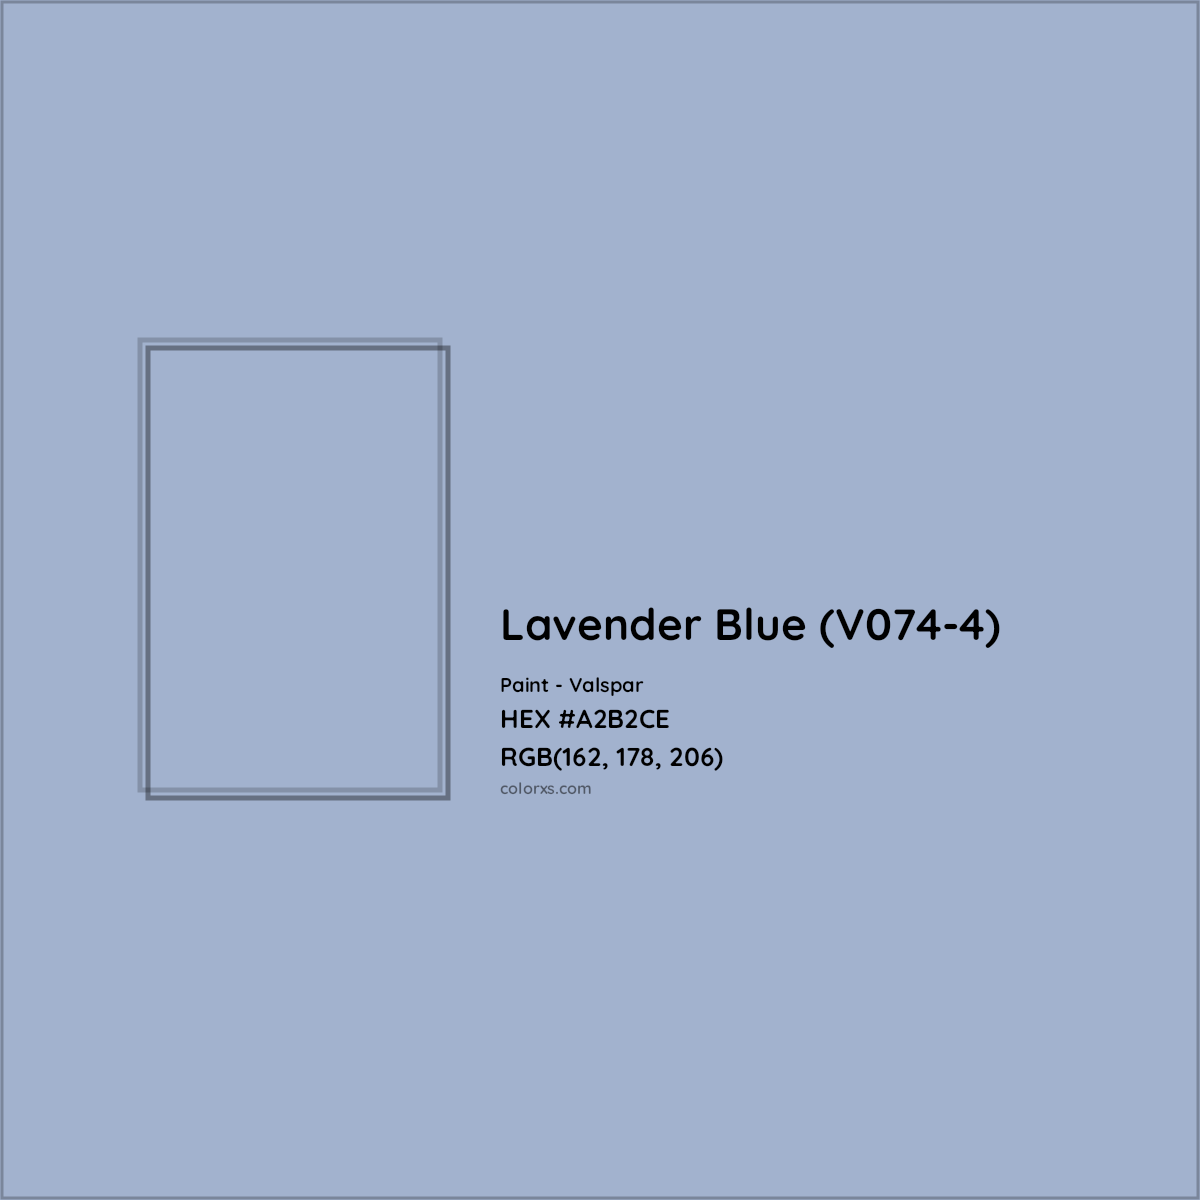 HEX #A2B2CE Lavender Blue (V074-4) Paint Valspar - Color Code